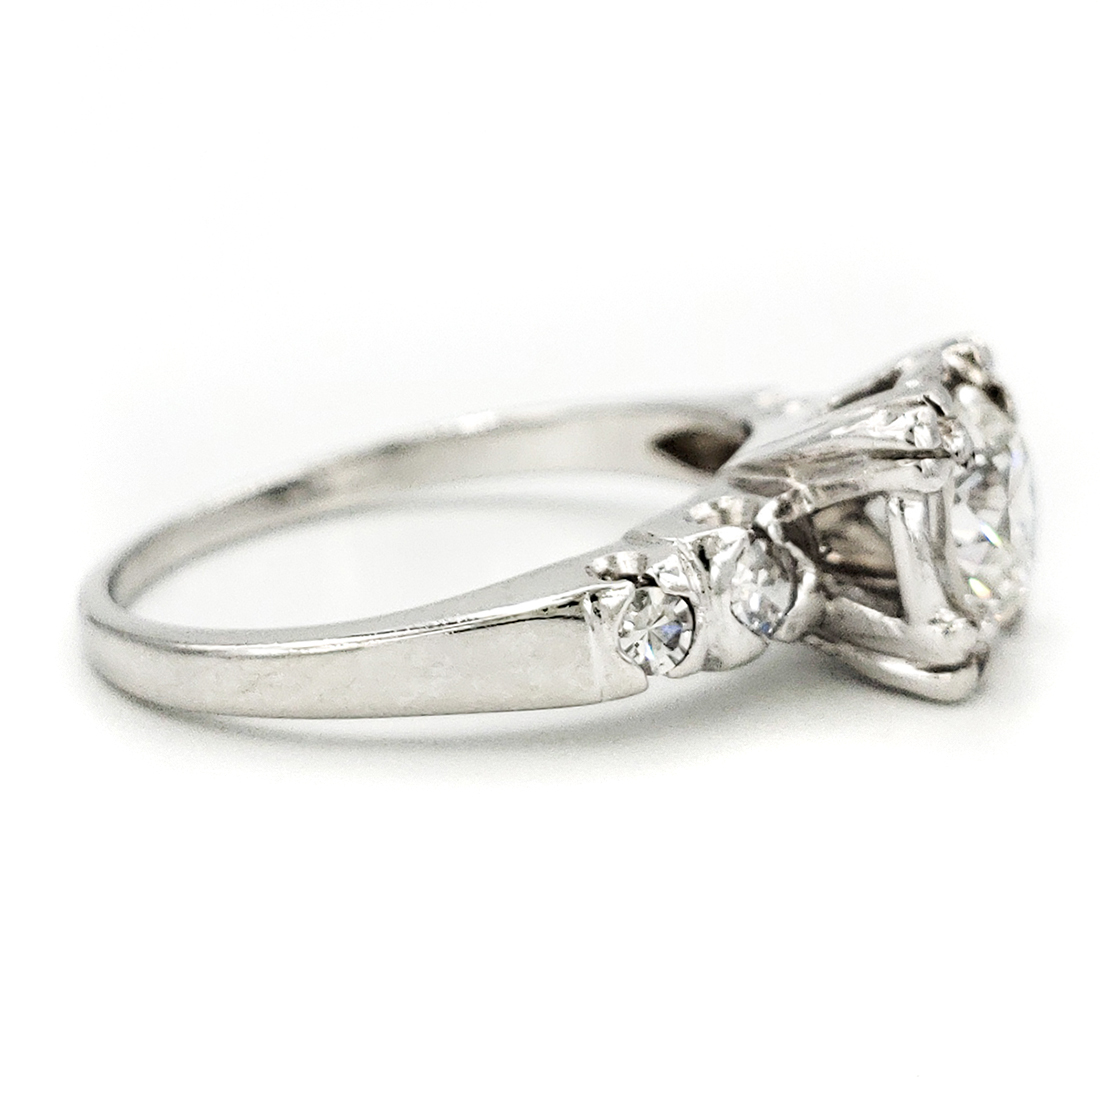 vintage-platinum-engagement-ring-with-0-77-carat-round-brilliant-cut-diamond-egl-h-vs2